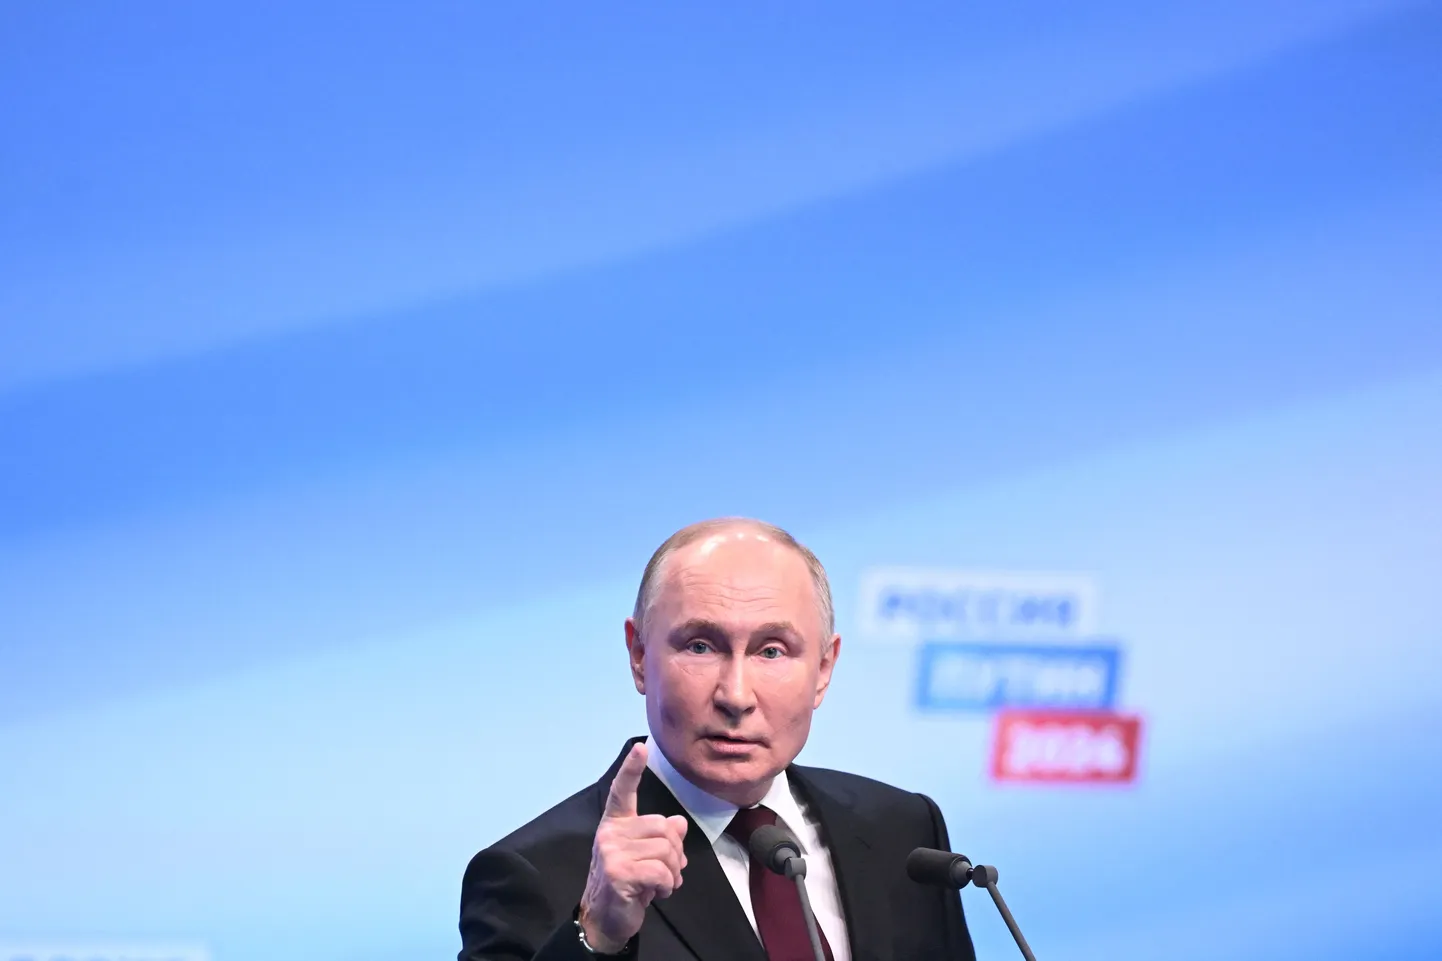 Российский диктатор Владимир Путин